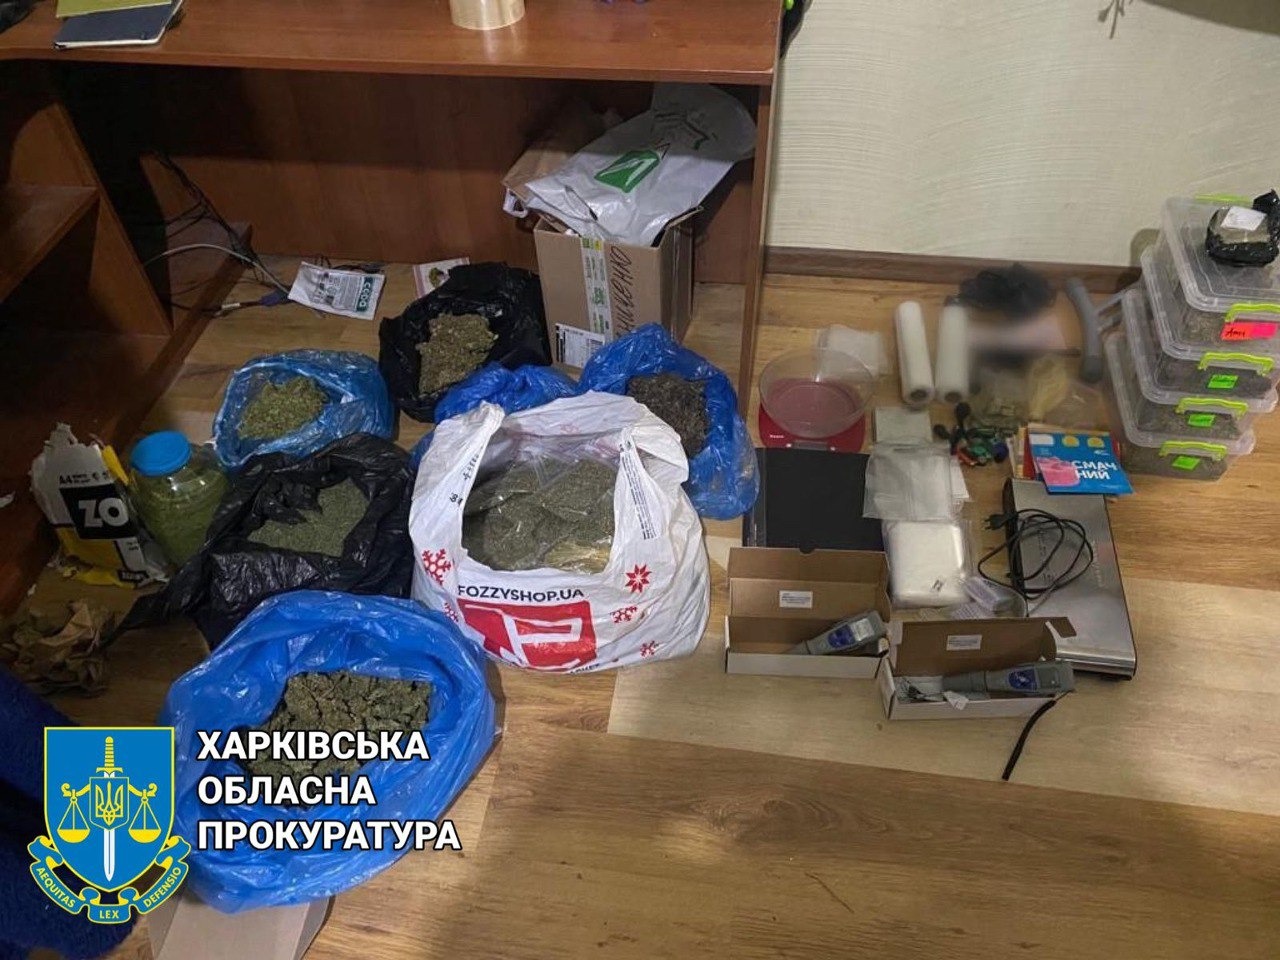 Наркотики выращивала семейная пара в Харьковской области 